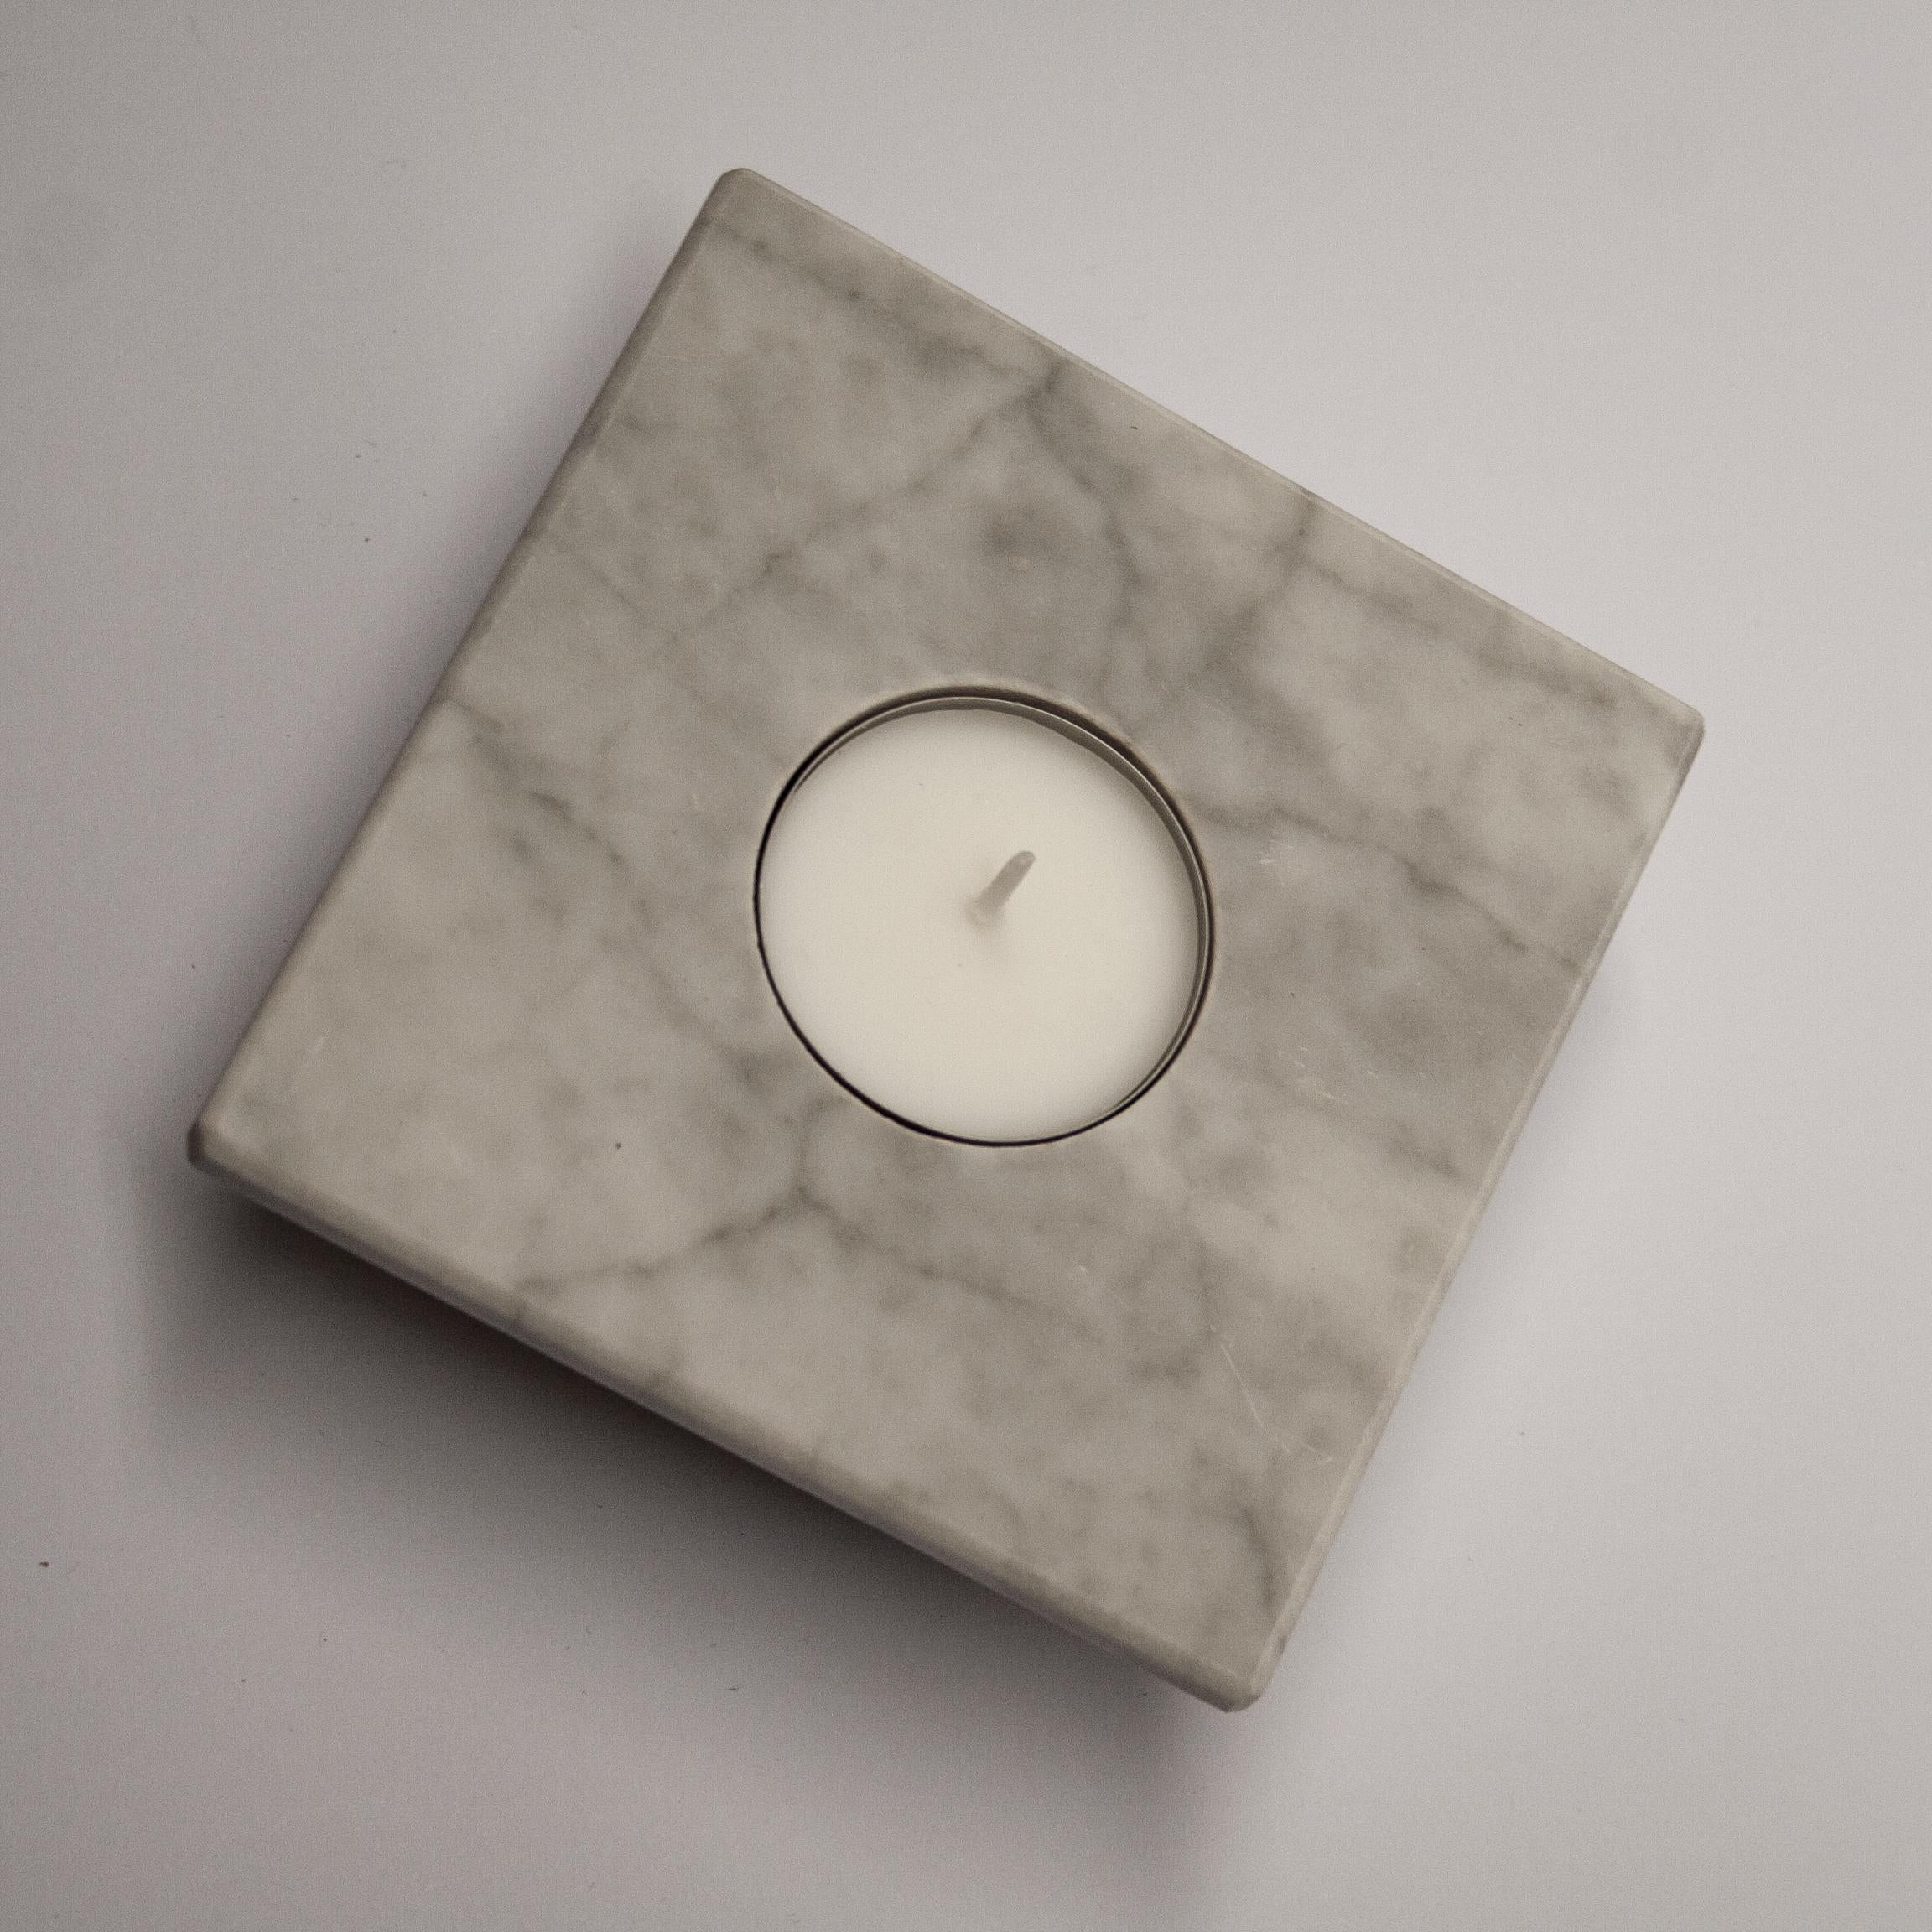 Kerzenständer aus weißem Carrara-Marmor Zeitgenössisches Design Muttertagsgeschenk Spanien.
Schöner Kerzenständer von einzigartigem und einfachem Design, es ist eine umgekehrte Pyramide aus massivem Marmor.
Oben ein Quadrat mit einem Loch in Form